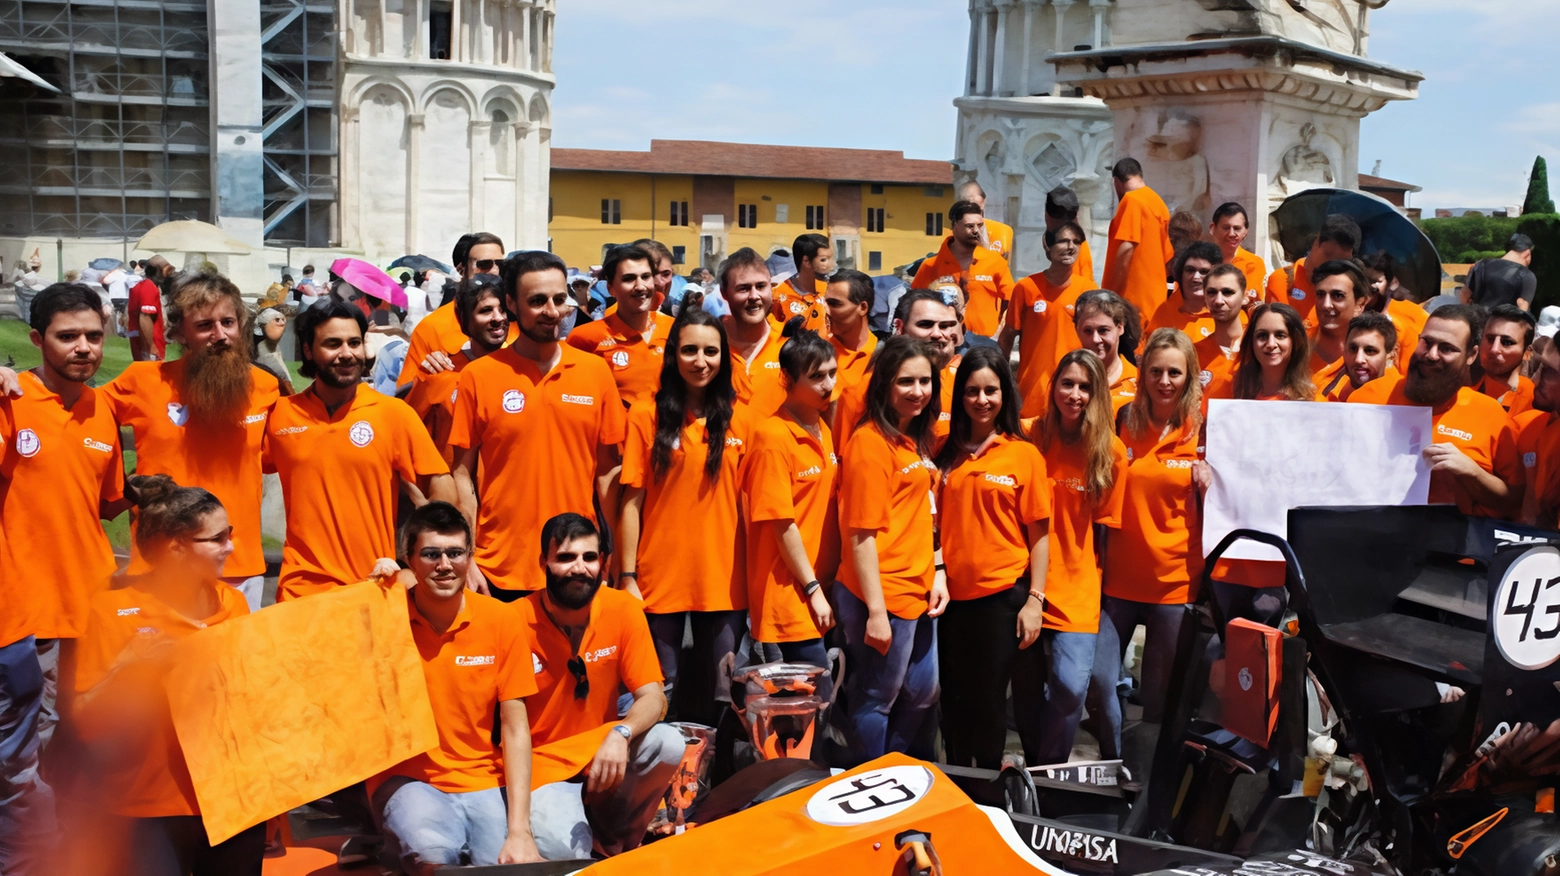 L’E-team, la squadra corse dell’Università di Pisa, è composta da un gruppo di oltre cento studenti, divisi in vari settori tecnici e gestionali.